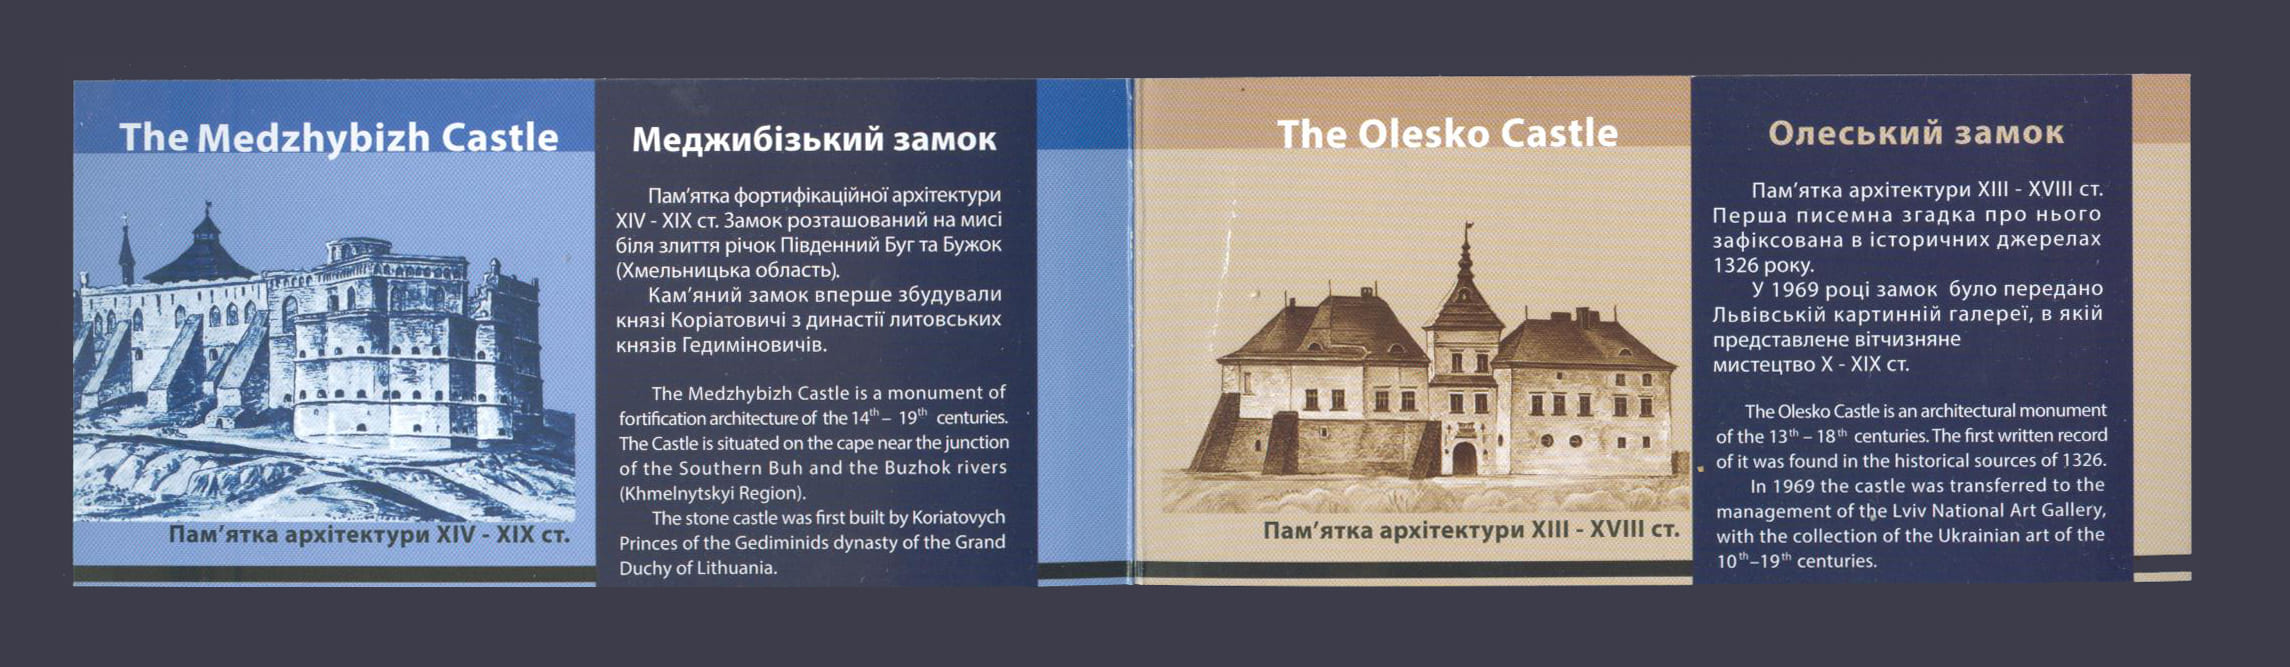 2017 буклет Меджибожский и Олесский замок №1566-1567 (Буклет 16)